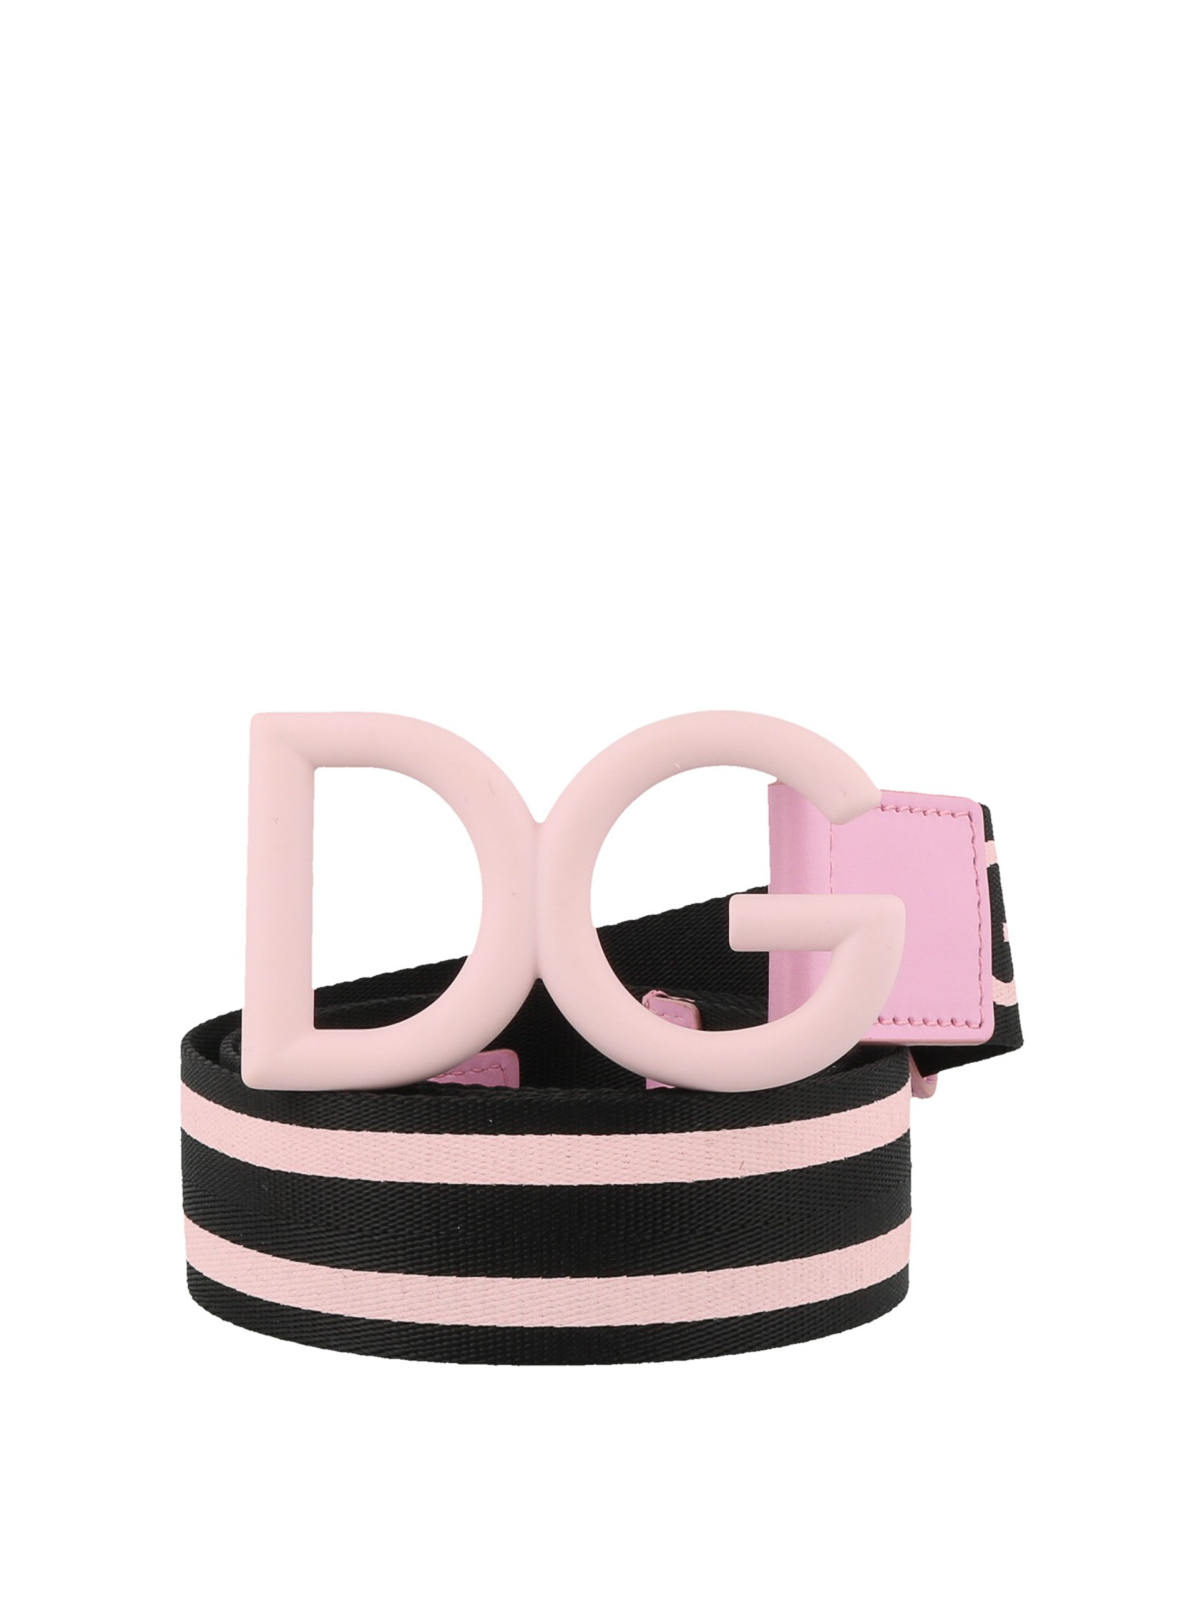 Details about   DOLCE & GABBANA Men's Belts Pink NIB Authentic 